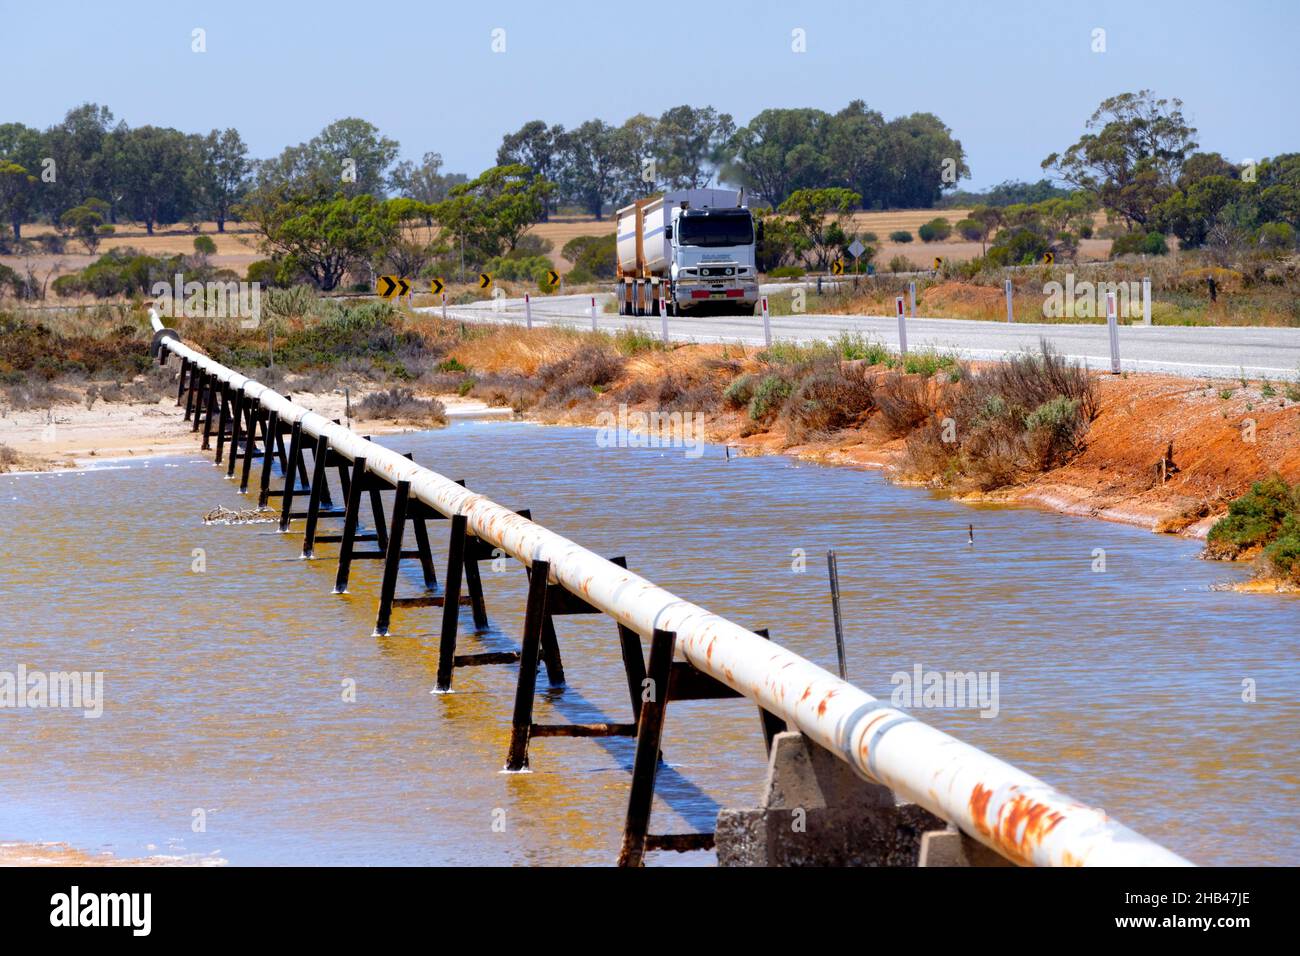 Cross country water pipe en stands cruzando el lago de sal con un camión que pasa, Wongan Hills, Australia Occidental Foto de stock